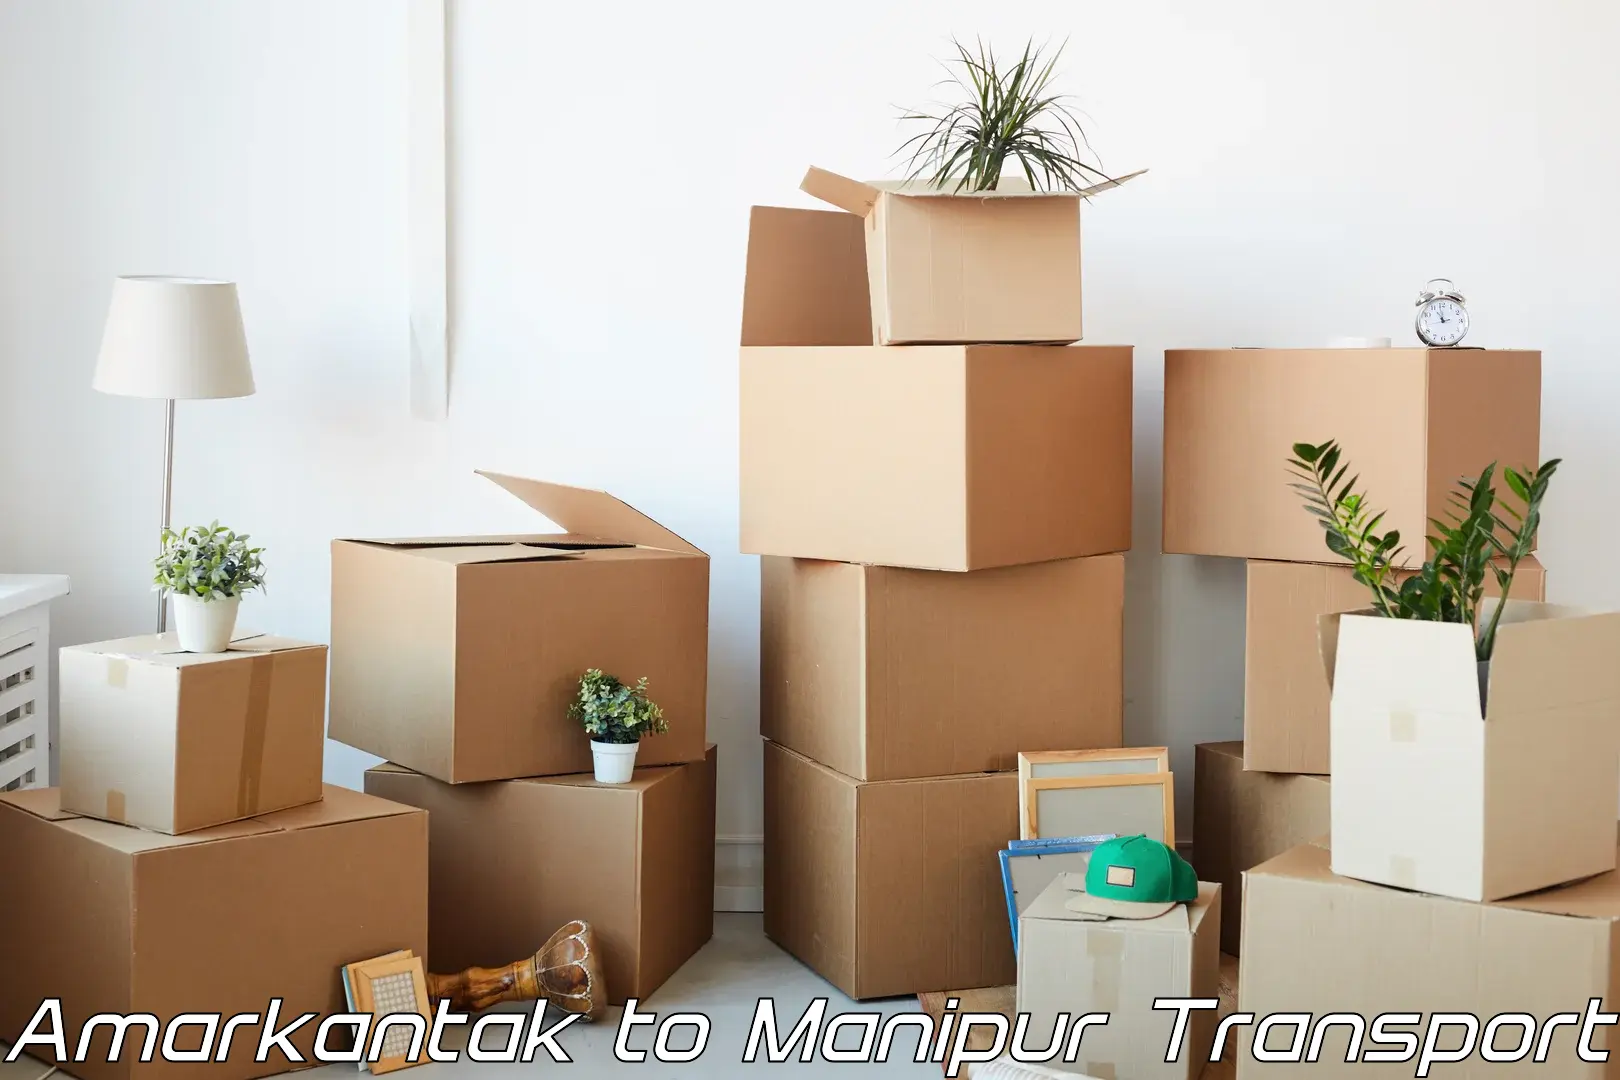 Cargo transport services Amarkantak to Moirang